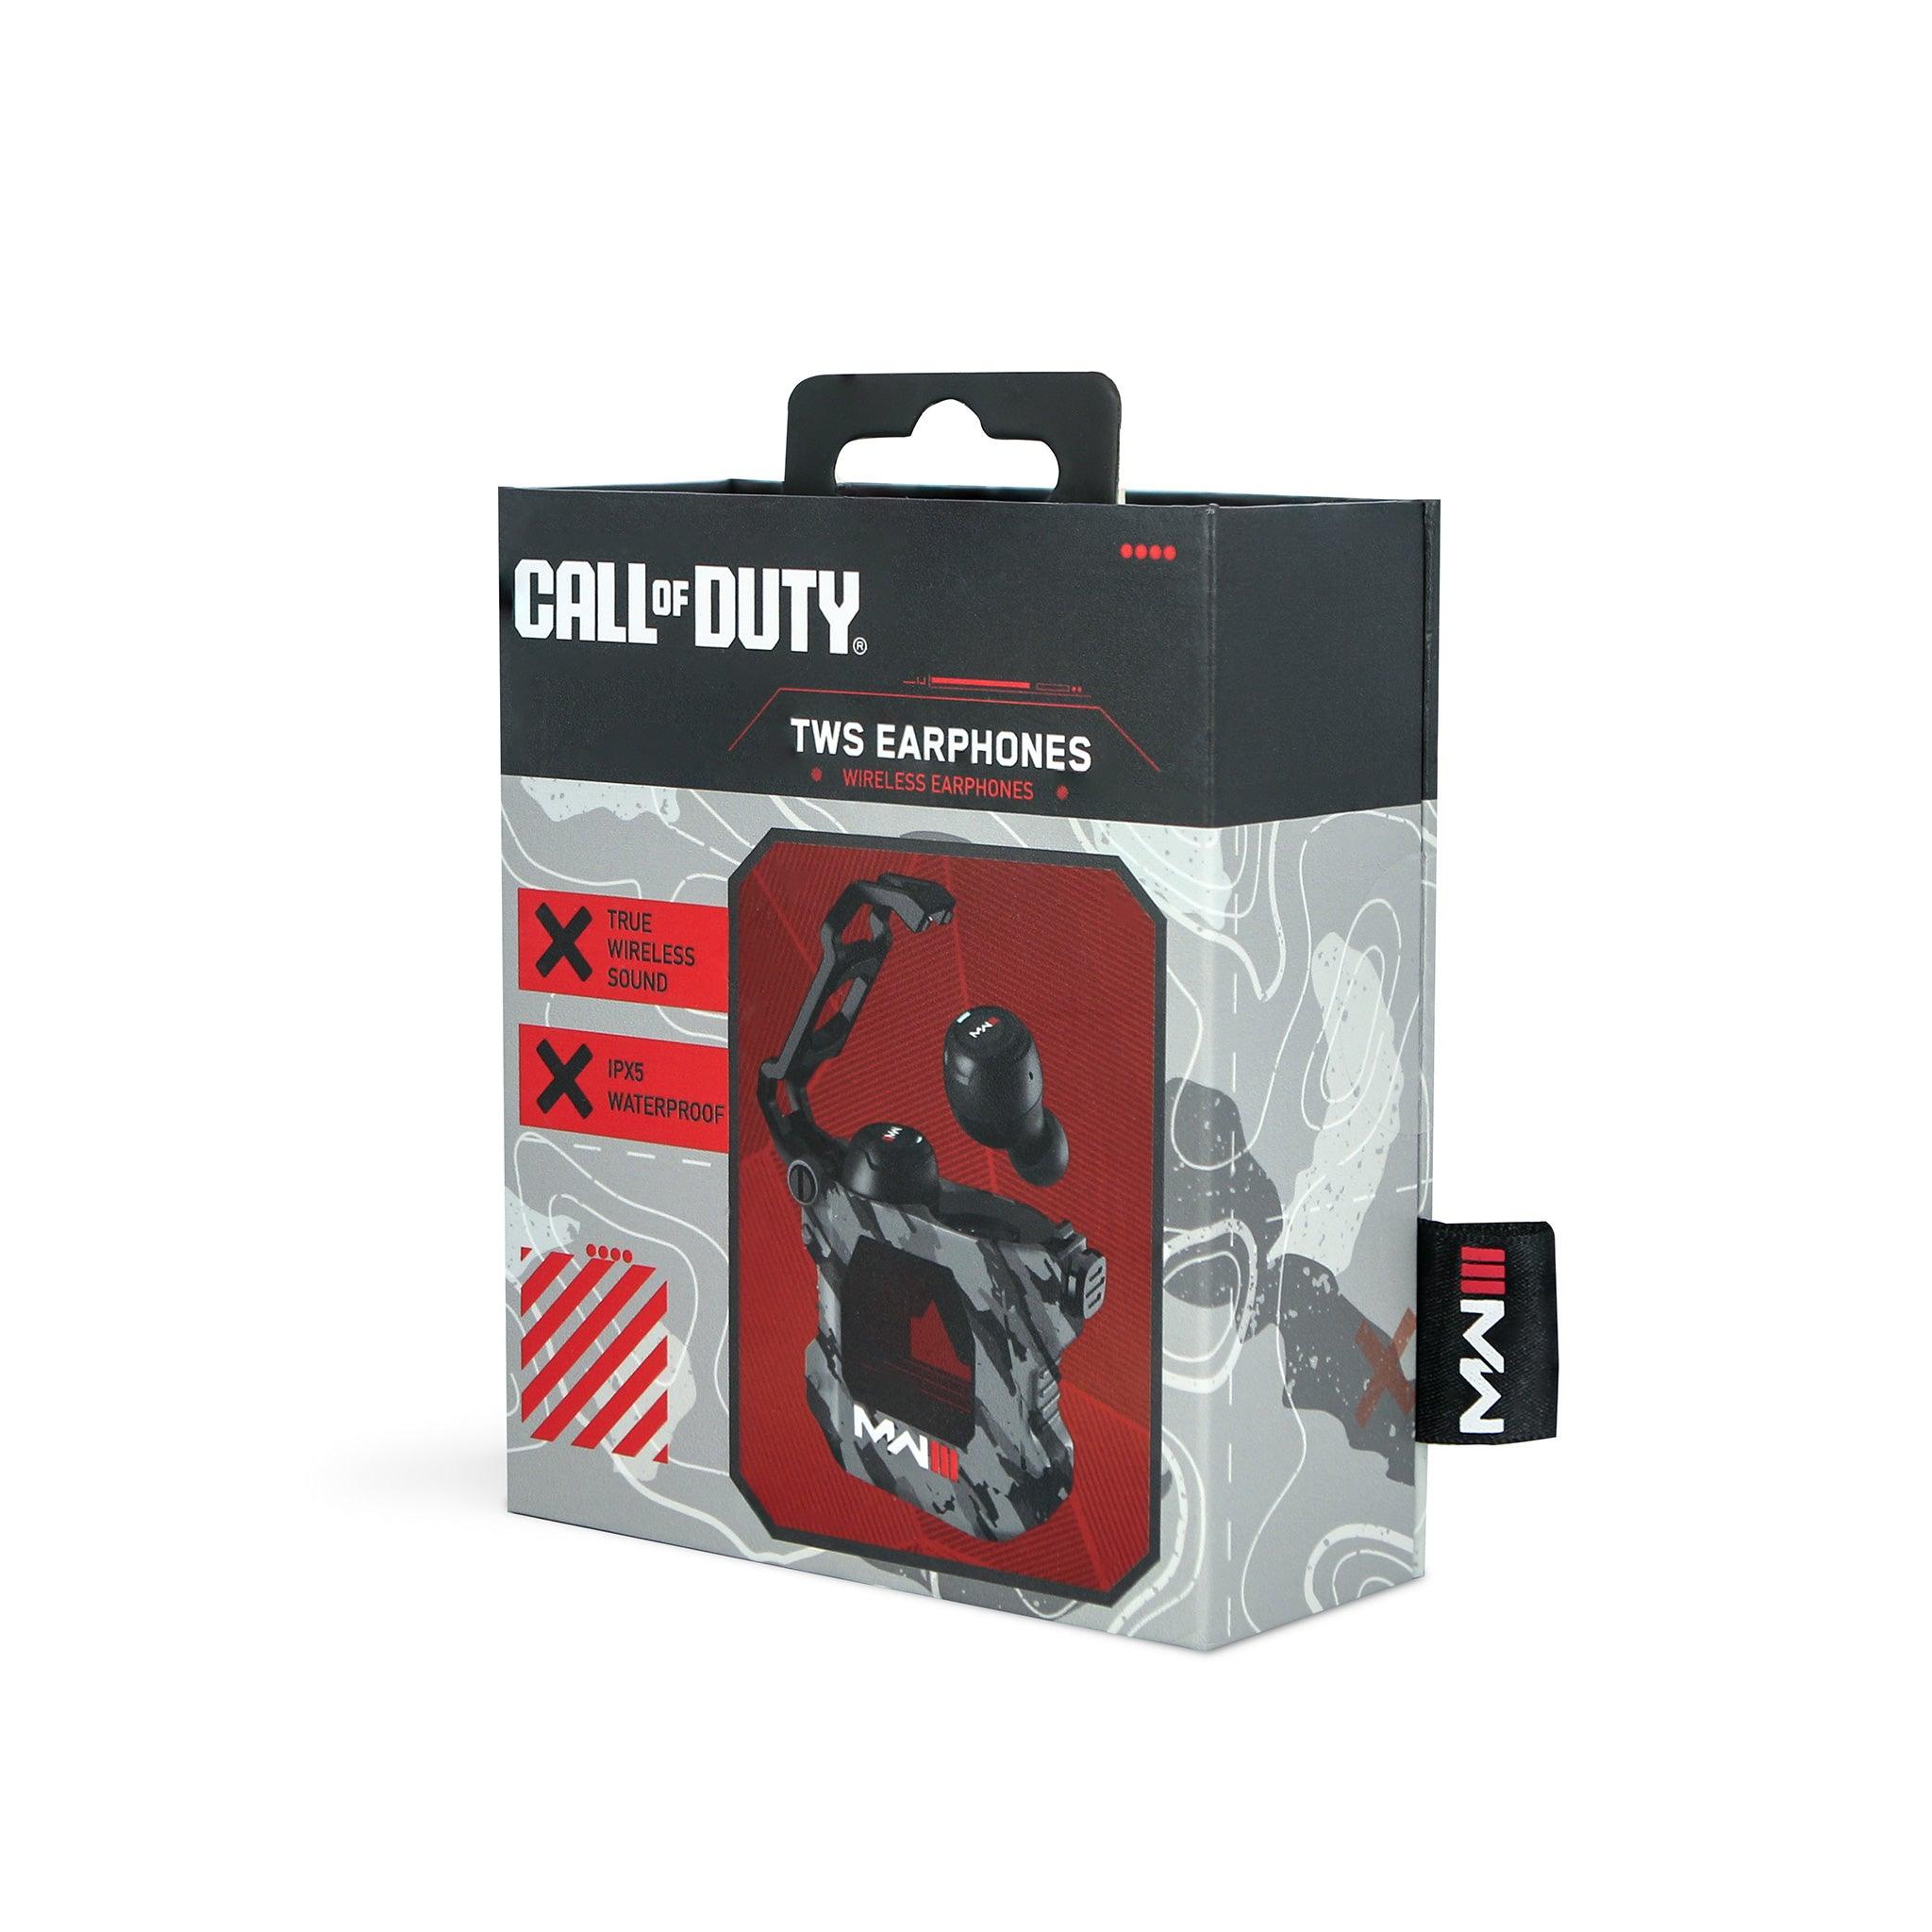 Call of Duty Modern Warfare III TWS Earphones Grey Camo